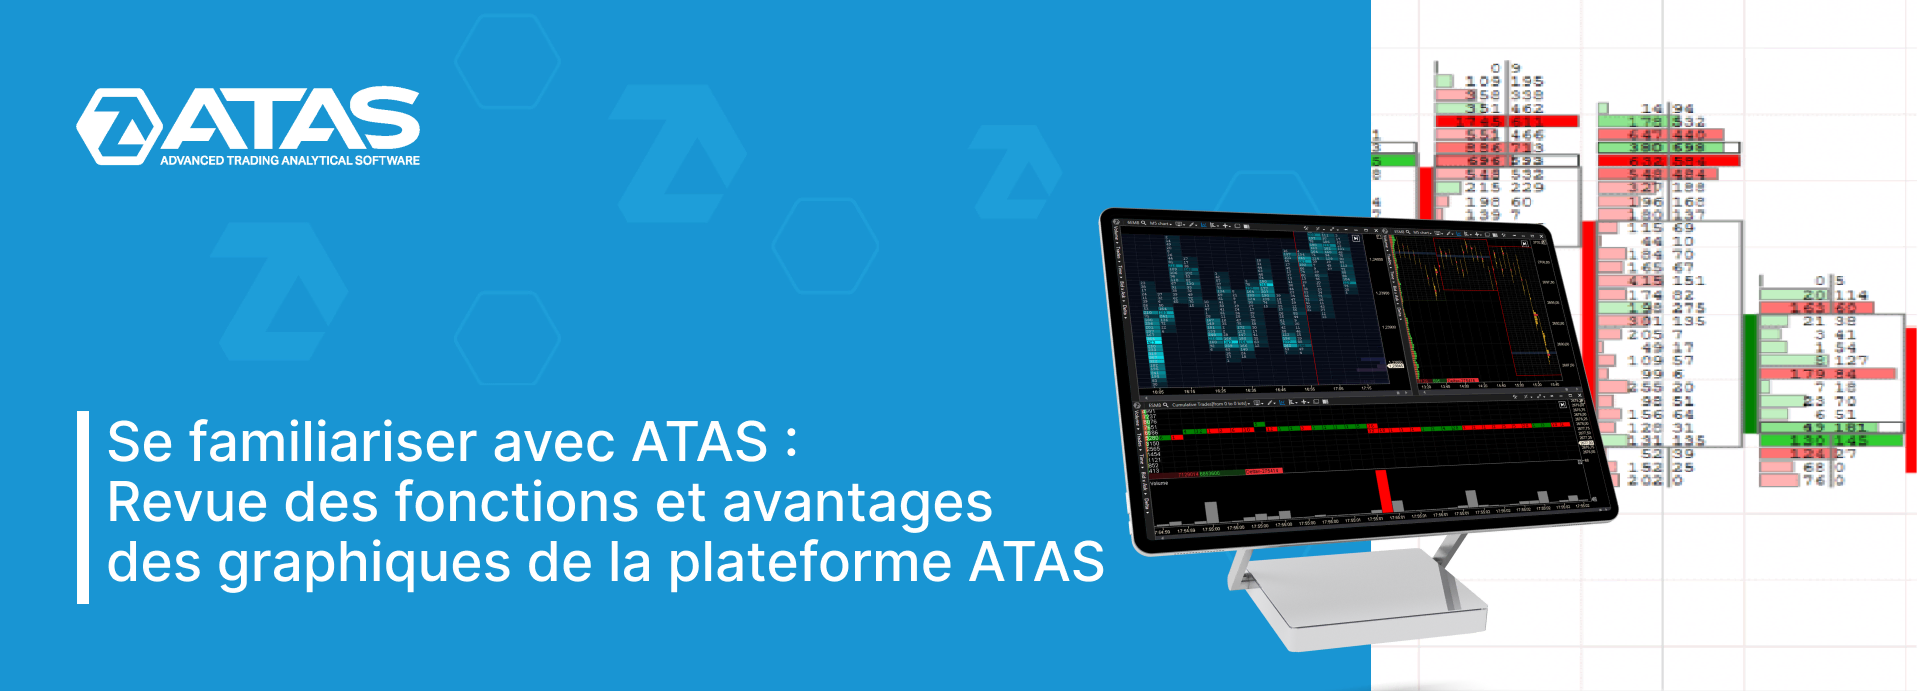 Revue des fonctions et avantages des graphiques de la plateforme ATAS